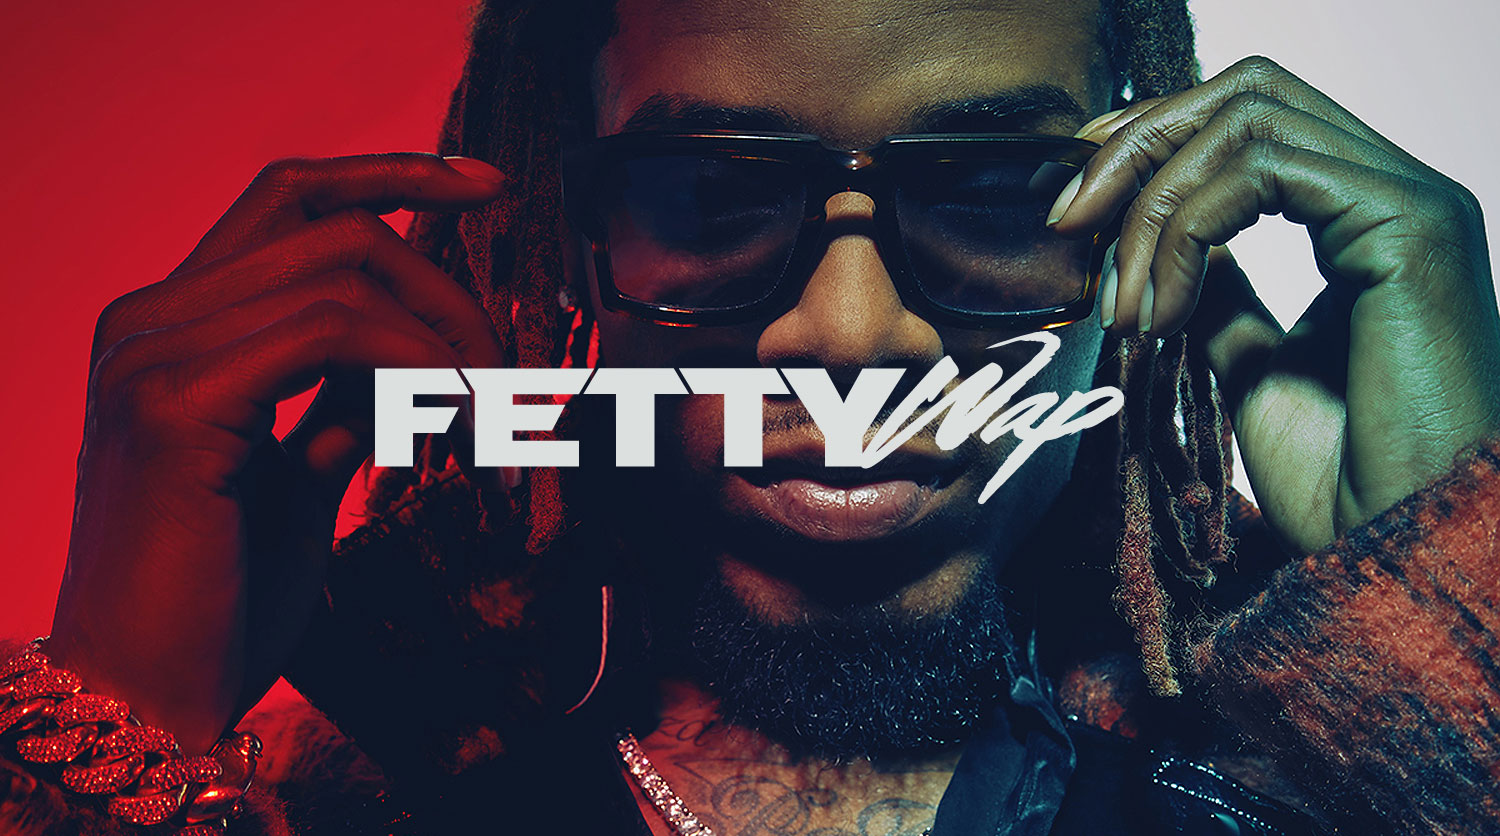 FETTY-WAP-YKTV - Fetty Wap